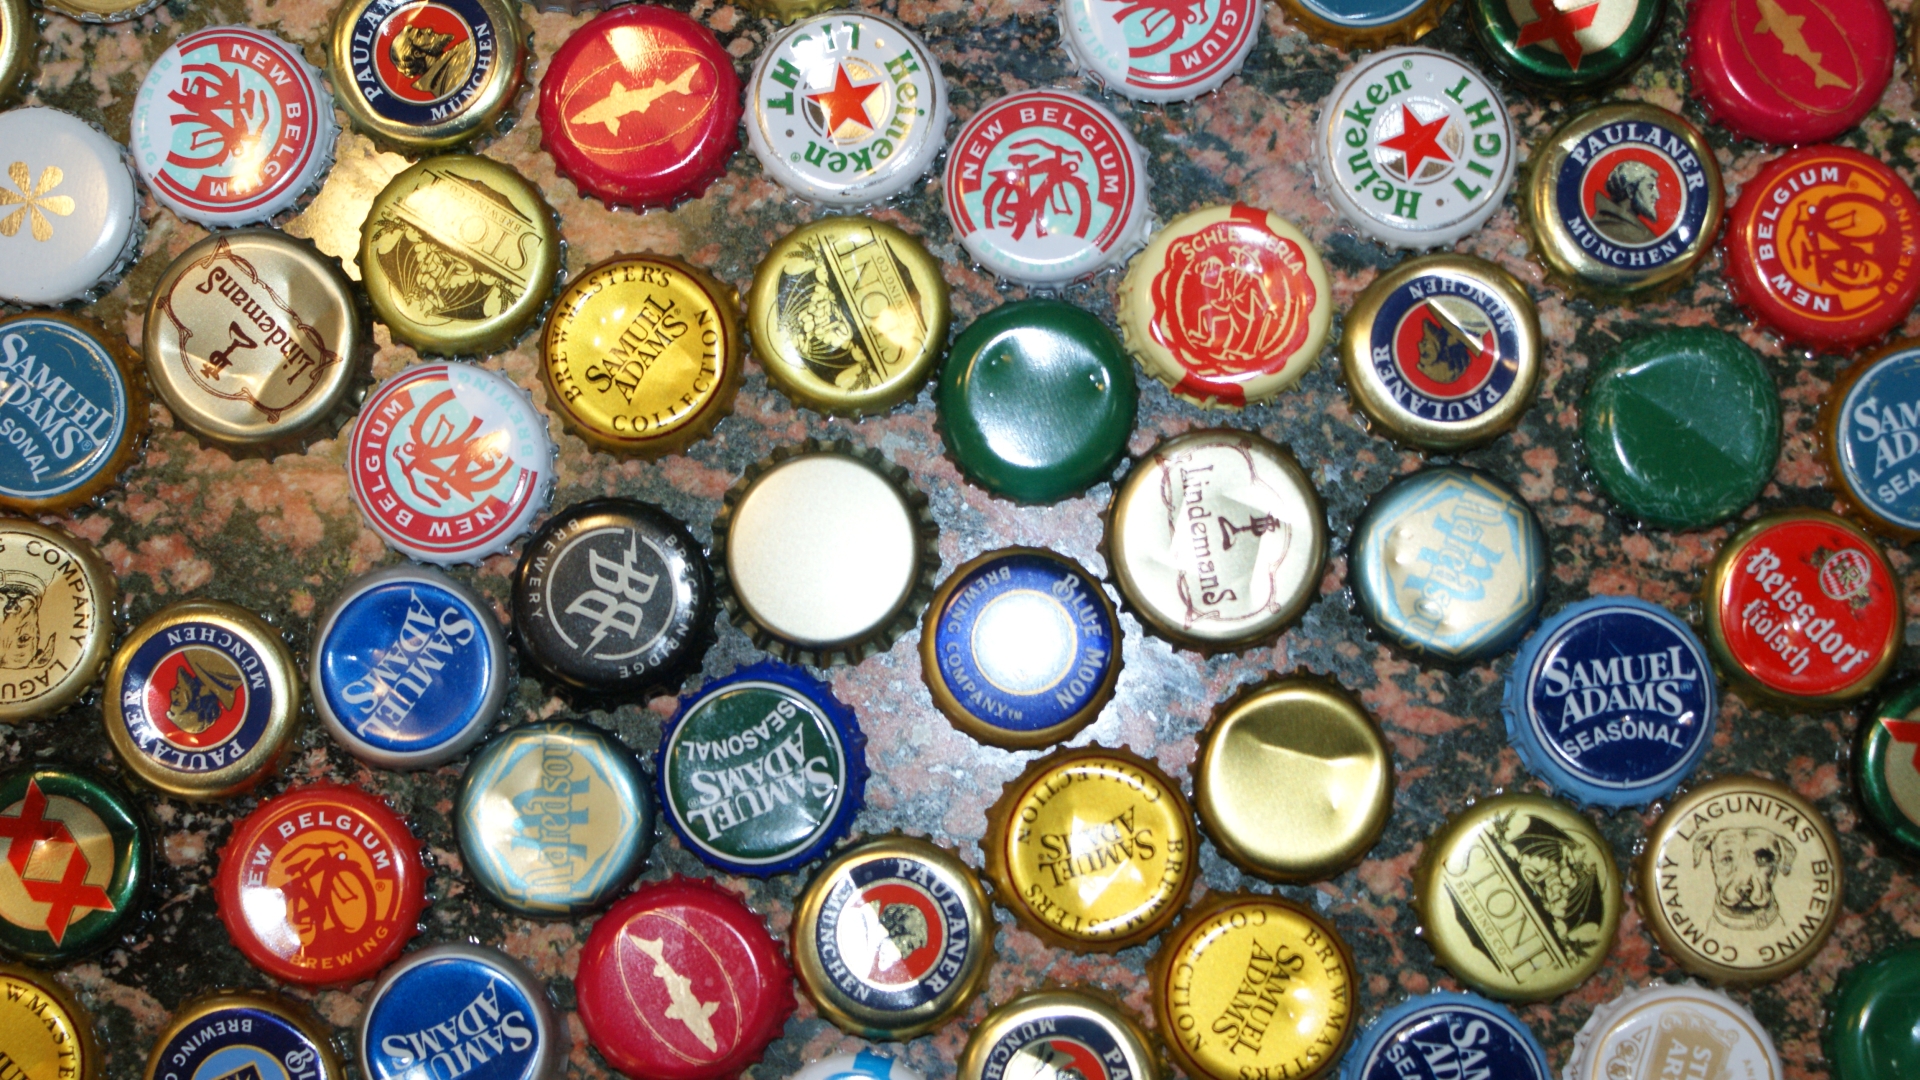 ビール瓶の壁紙,瓶のキャップ,コレクション,ボタン,ピンバックボタン,メダル